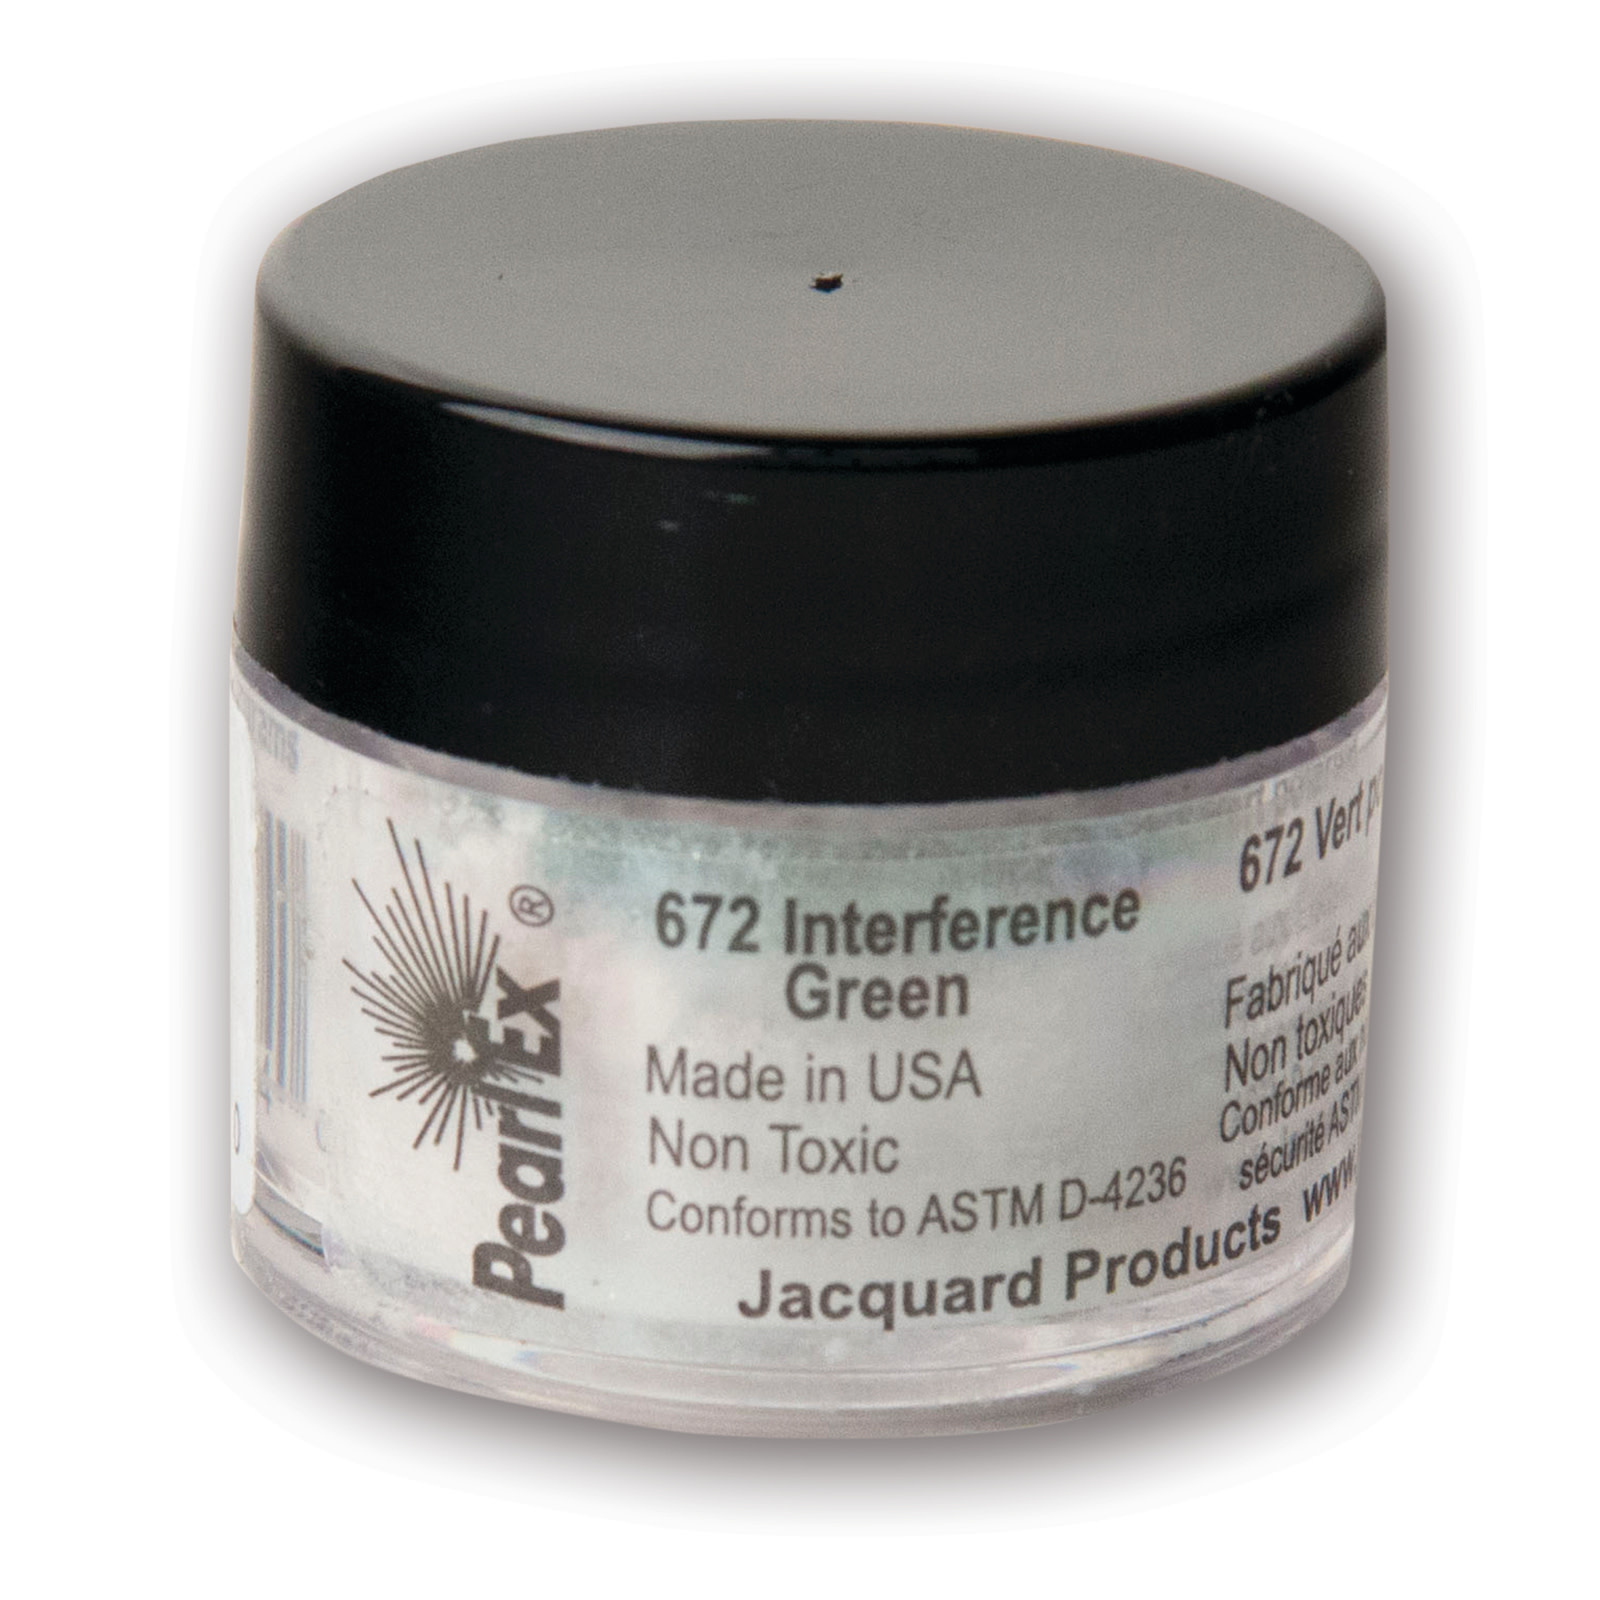 Jacquard Pearl Ex Powdered Pigment, 3g Jar, Interference Green